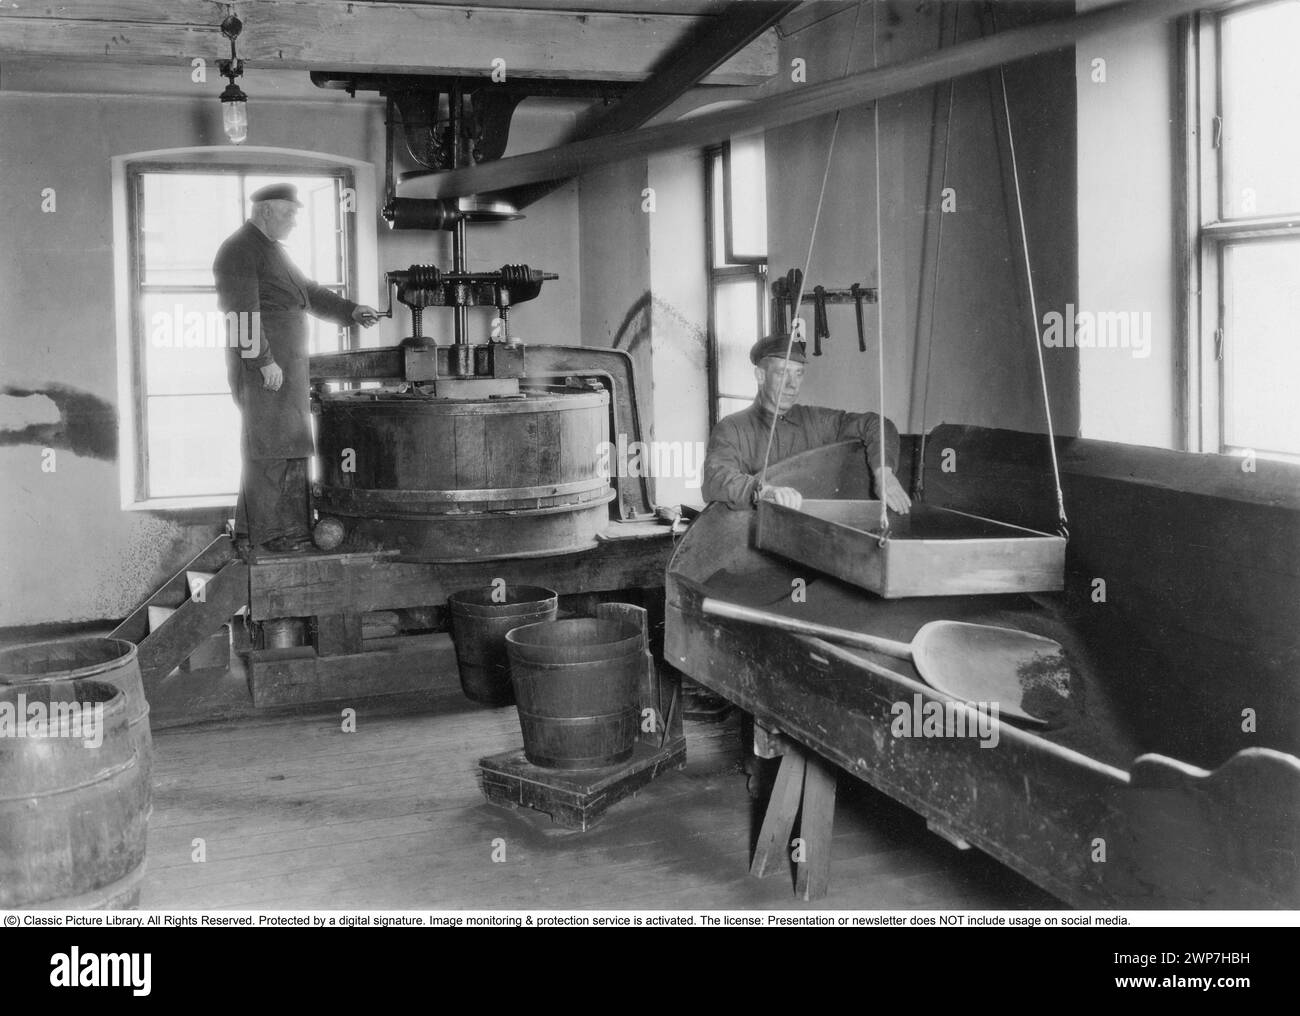 Usine Swartzska snus à Norrköping 1931. Intérieur des locaux de l'usine à Skolgatan 1. Le grand moulin à snus était alors le plus ancien et le seul du genre en Suède. La fabrique de snus a été fondée par Petter Swartz au 18ème siècle. L'entreprise de snus a bien fonctionné et leurs produits Swartzen's snus et Röda lacket sont devenus populaires dans tout le pays, l'une des plus anciennes marques de snus existant. La fabrique de snus et la recette secrète de snus ont été transmises de père en fils pendant cinq générations sans interruption pendant 160 ans. L'usine a été fermée en 1931. Le snus est placé entre la lèvre supérieure Banque D'Images